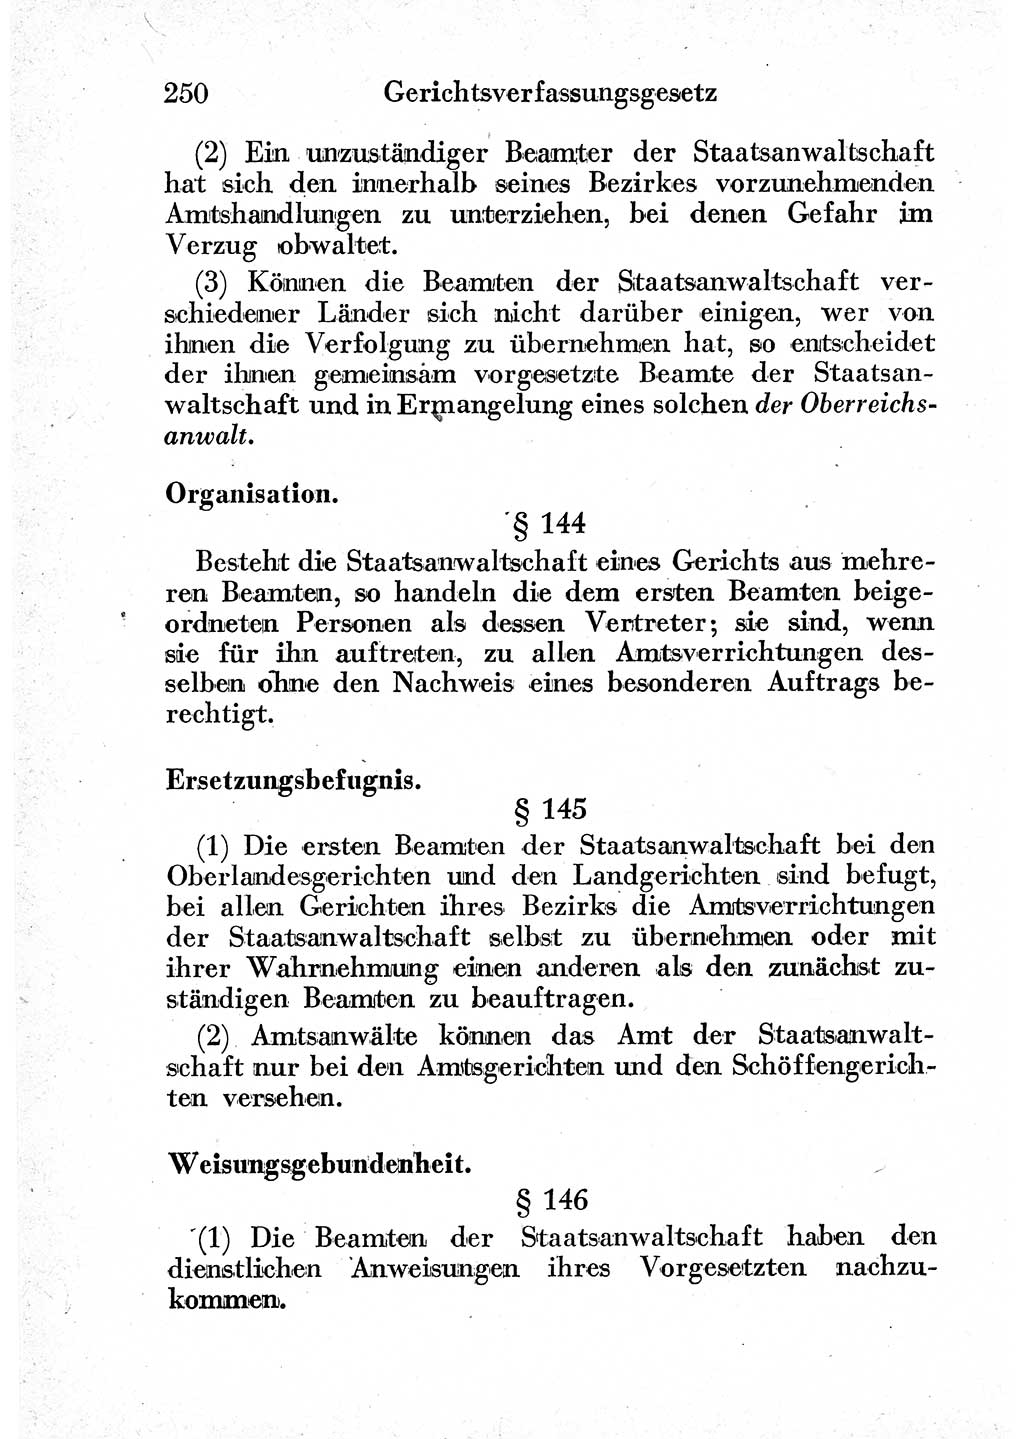 Strafprozeßordnung (StPO), Gerichtsverfassungsgesetz (GVG) und zahlreiche Nebengesetze der sowjetischen Besatzungszone (SBZ) in Deutschland 1949, Seite 250 (StPO GVG Ges. SBZ Dtl. 1949, S. 250)